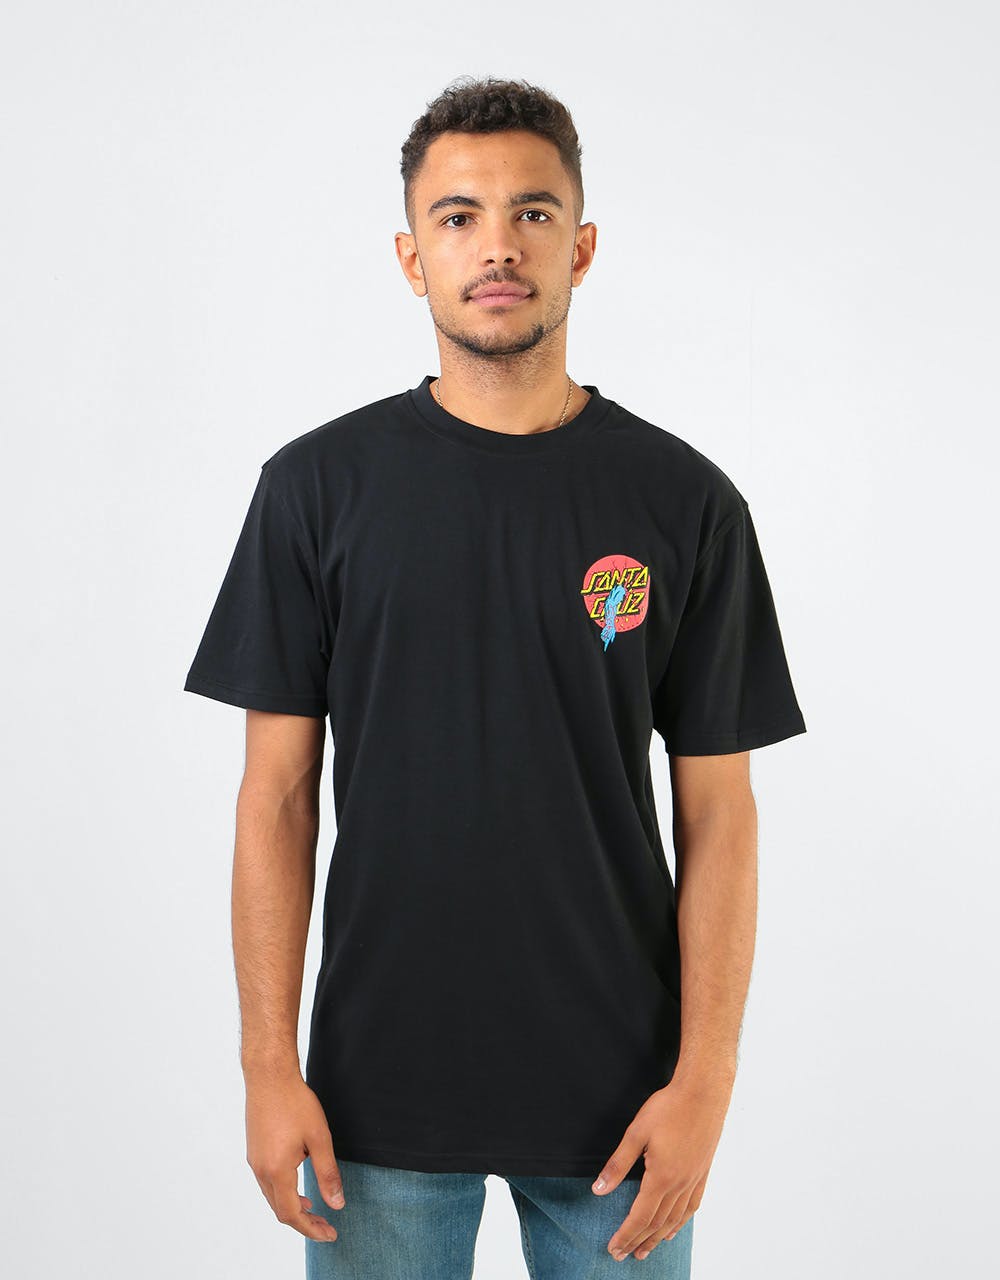 Santa Cruz Rob Dot T-Shirt - Black